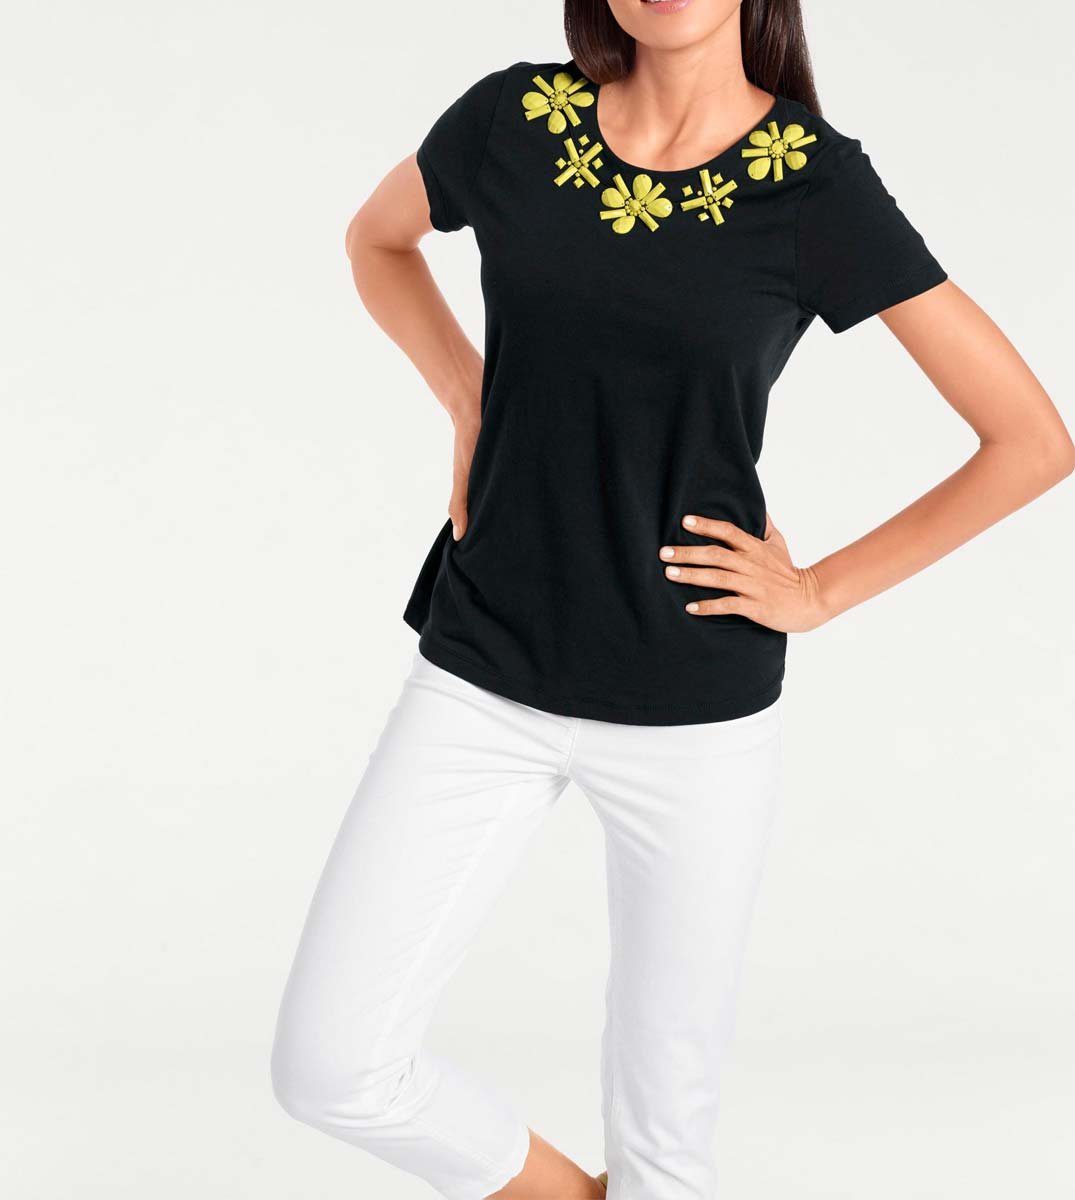 Brooke Ashley Brooke schwarz-gelb Ashley Damen Rundhalsshirt by heine Designer-Shirt,